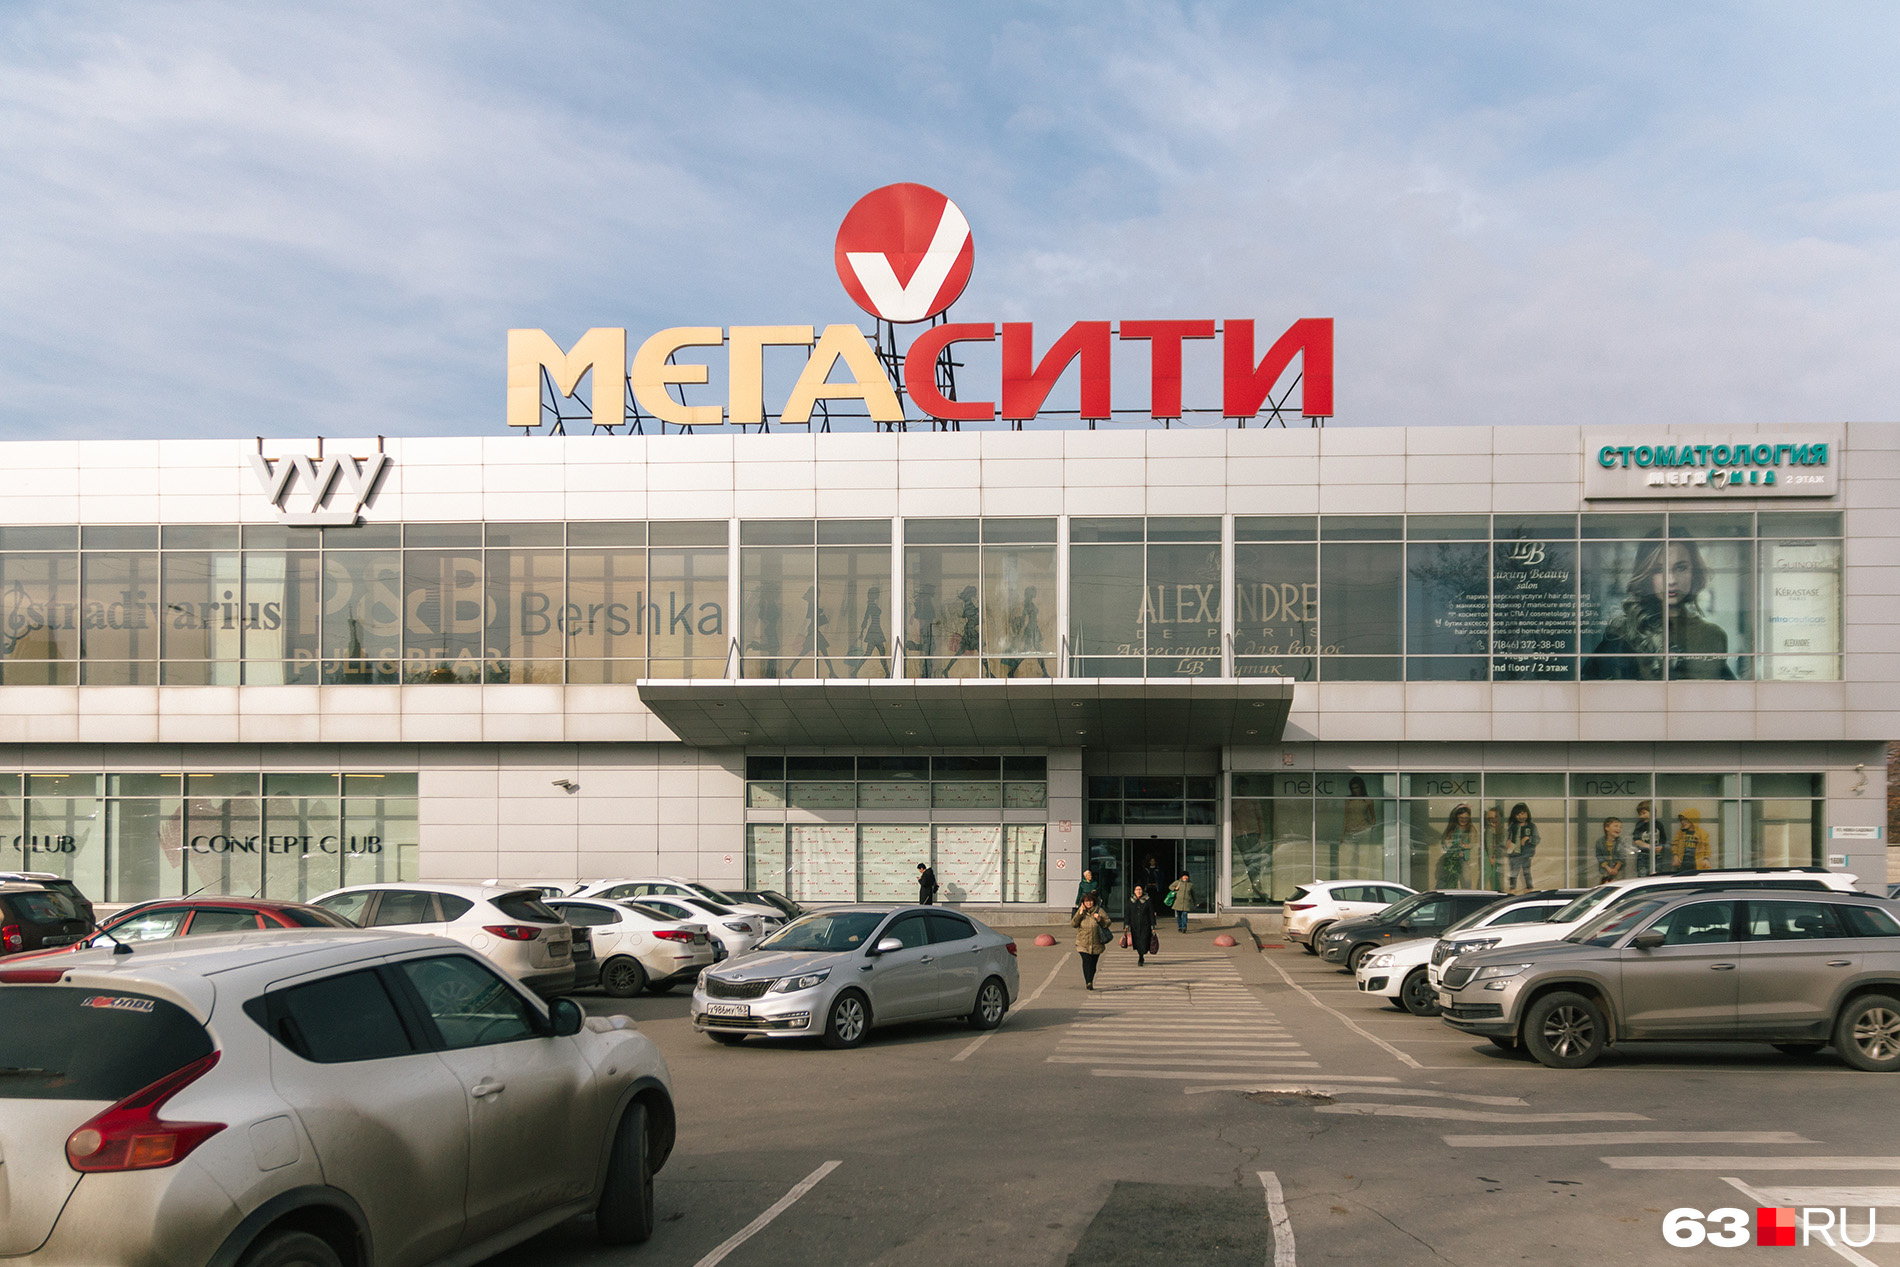 Торговый центр находится на улице Ново-Садовой — напротив корпуса Самарского университета